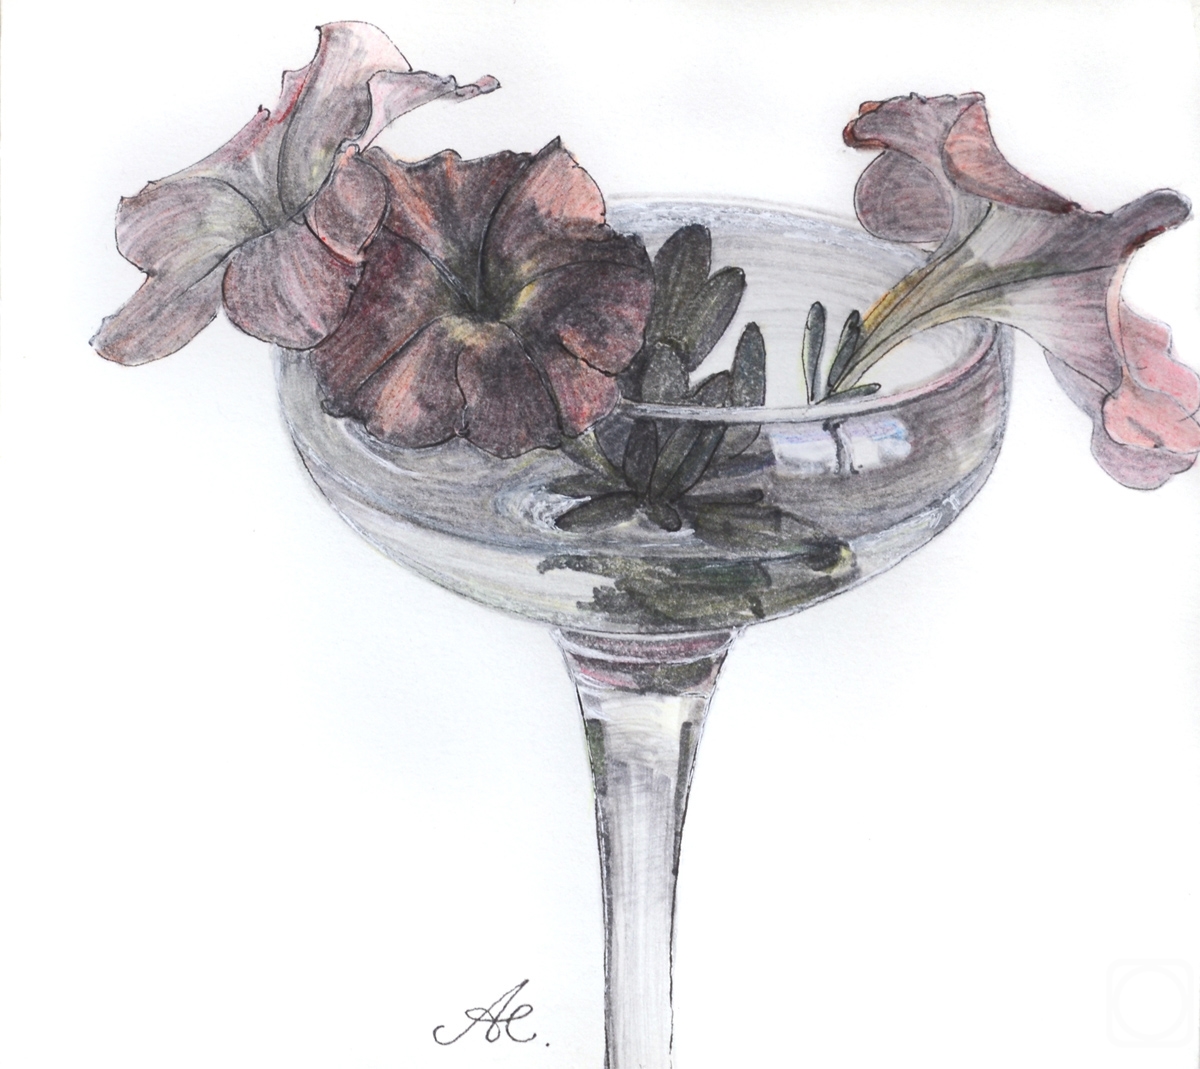 Alferonok Victoria. Petunia in a glass